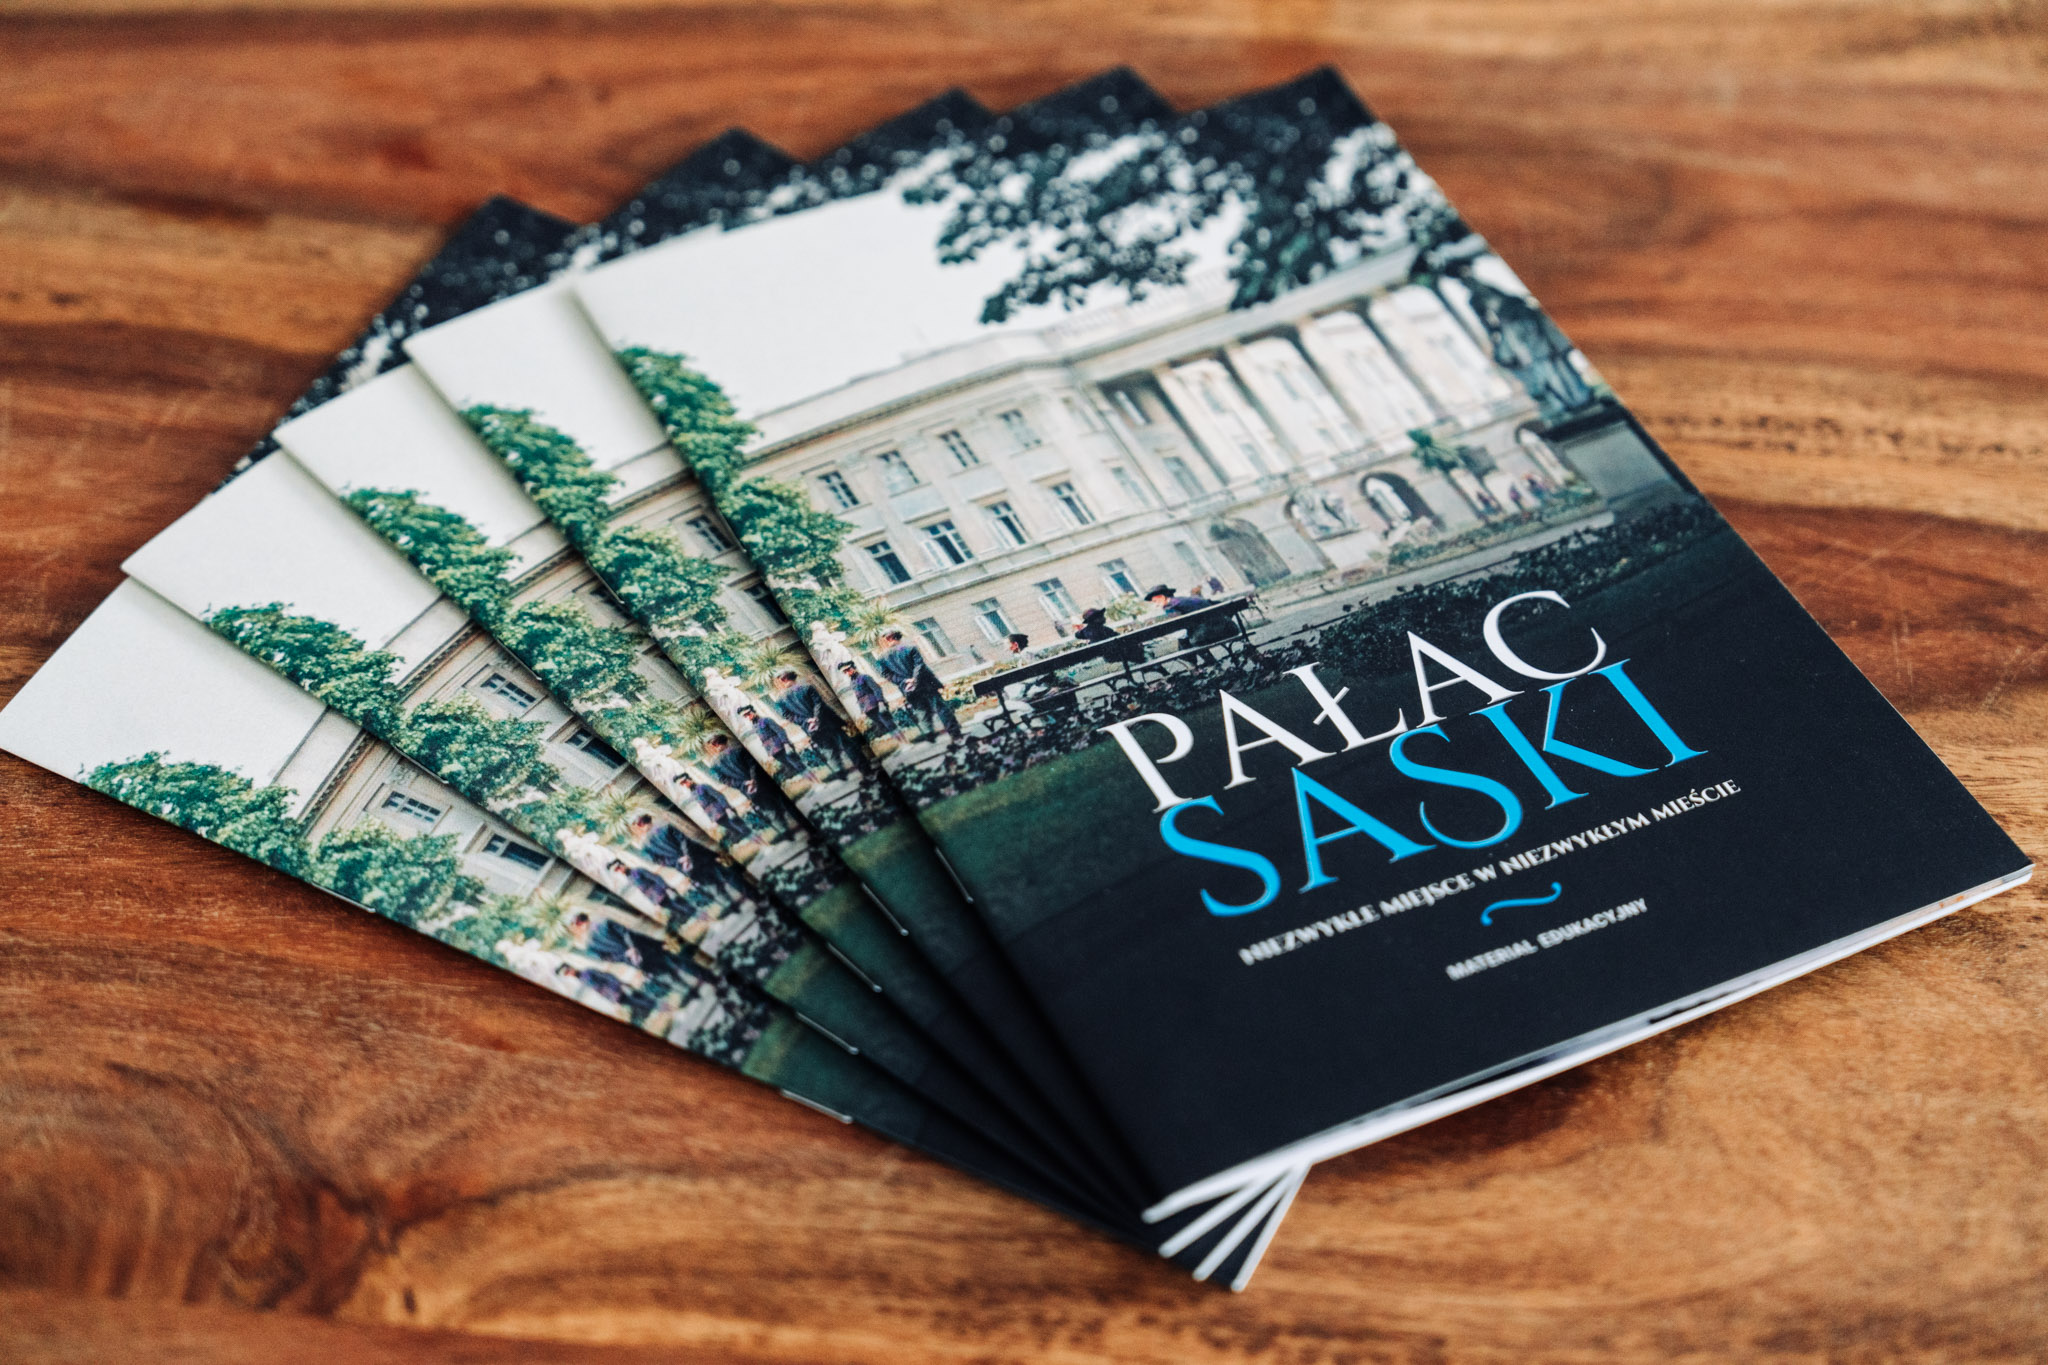 Pięć broszur edukacyjnych o Pałacu Saskim ułożonych w wachlarz. W tle drewniany blat stołu.